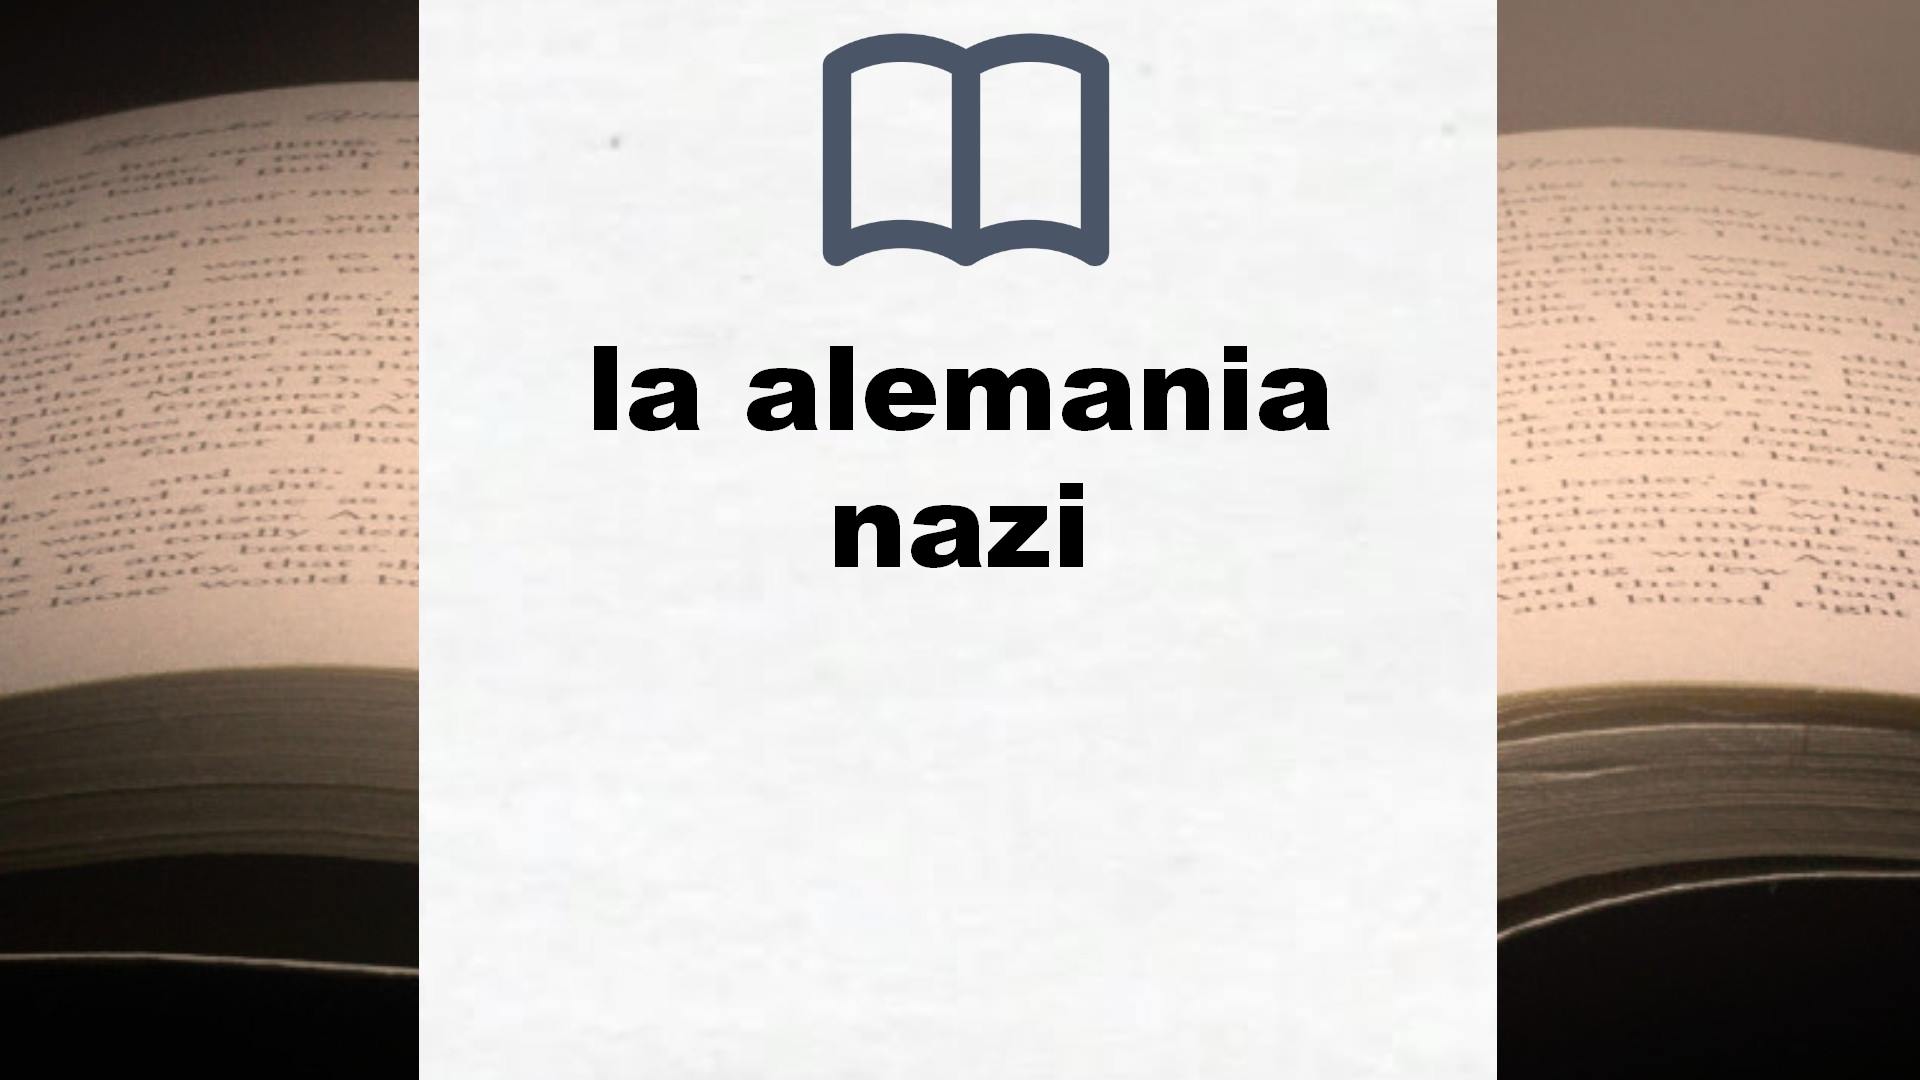 Libros sobre la alemania nazi